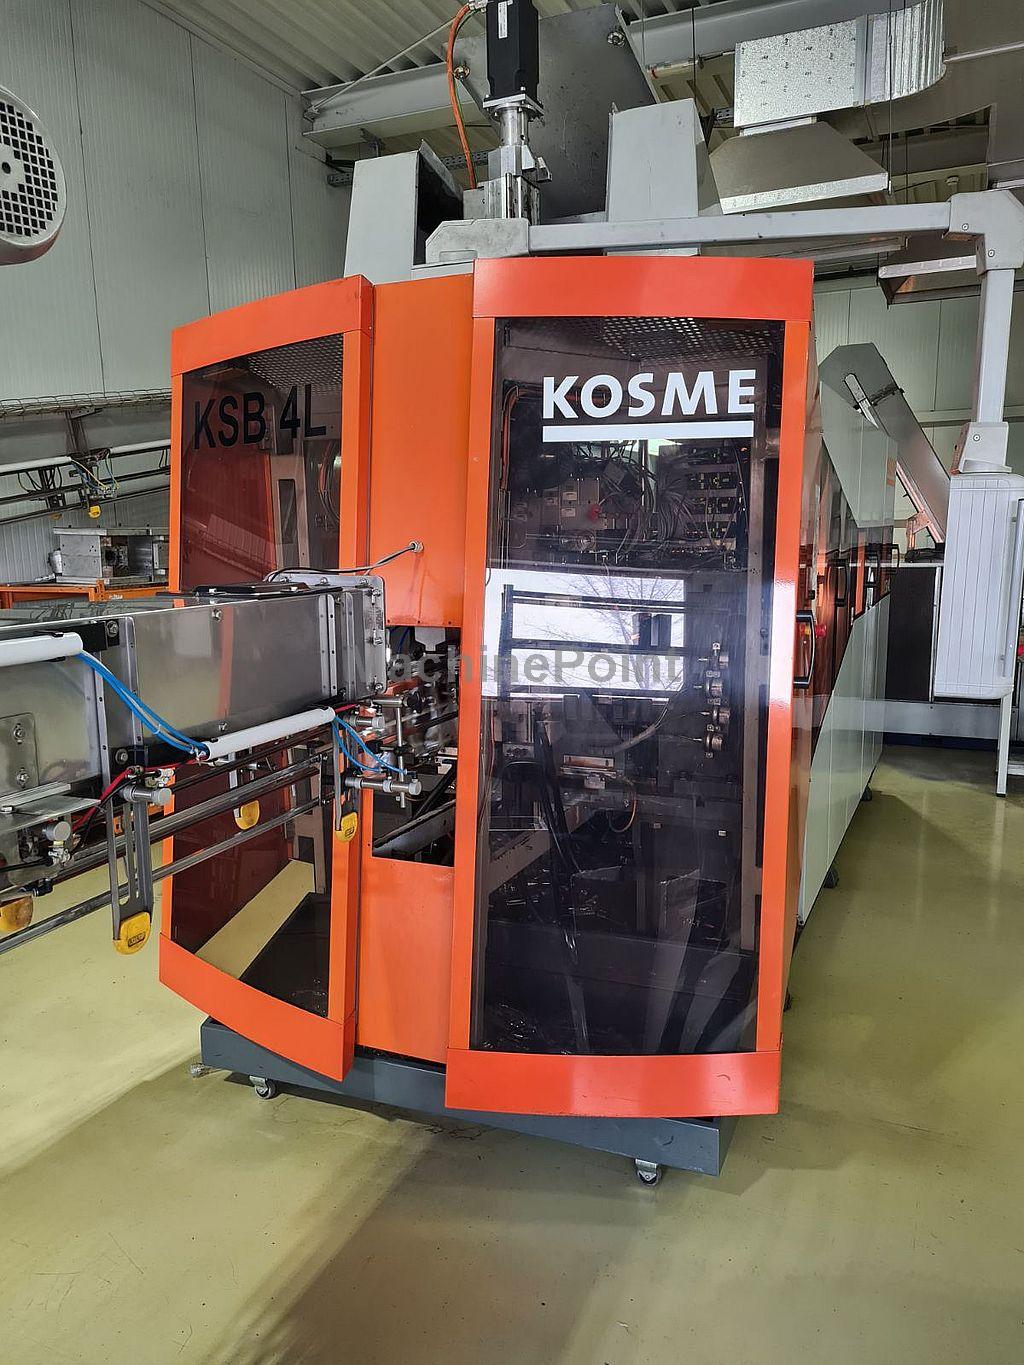 KOSME - KSB 4000 - Б/У Оборудование